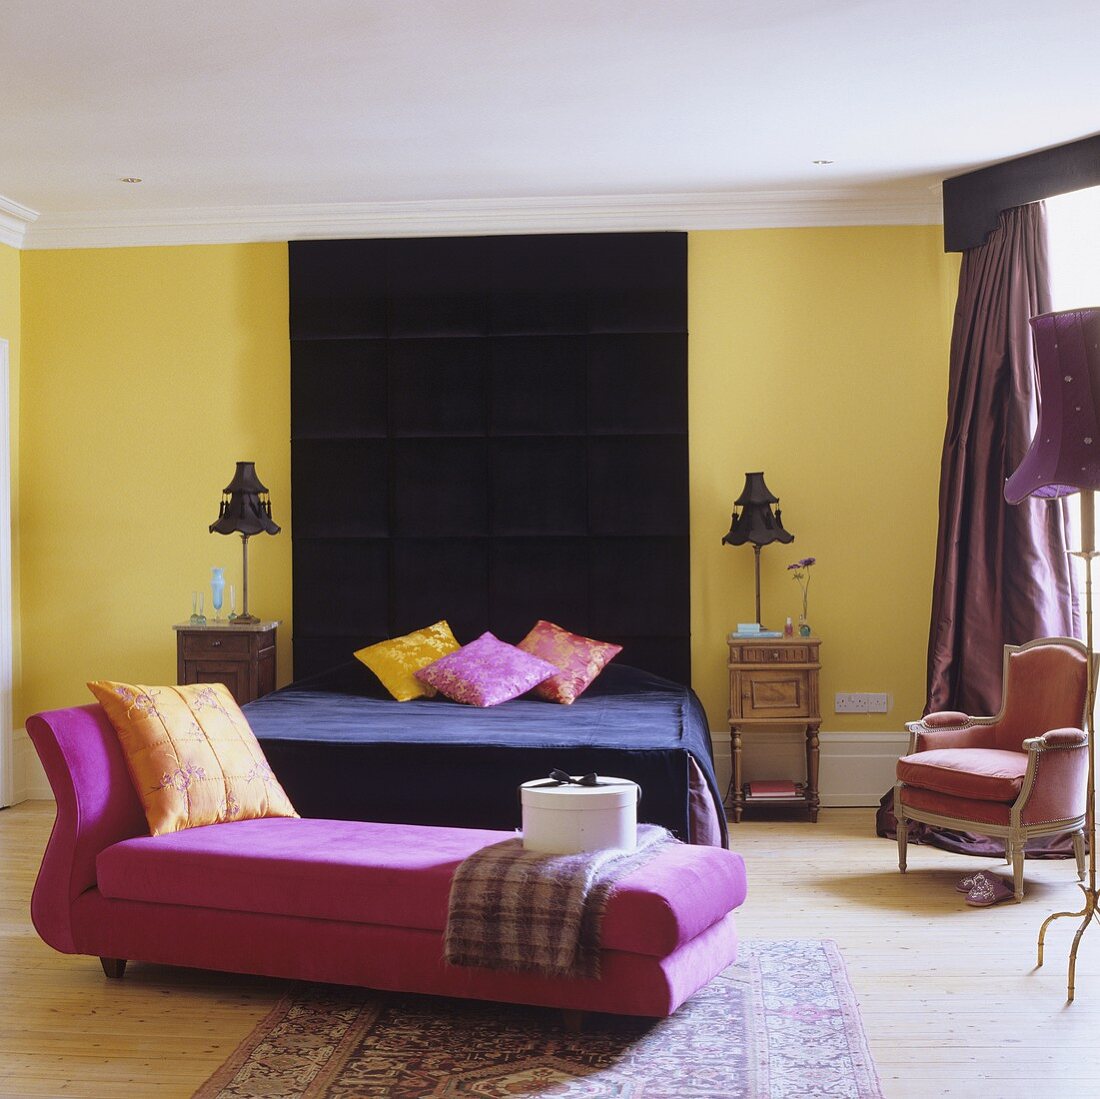 Farben im Schlafraum - pinkfarbene Chaiselongue vor schwarzem Bett mit raumhoher Wandpolsterung an gelber Wand